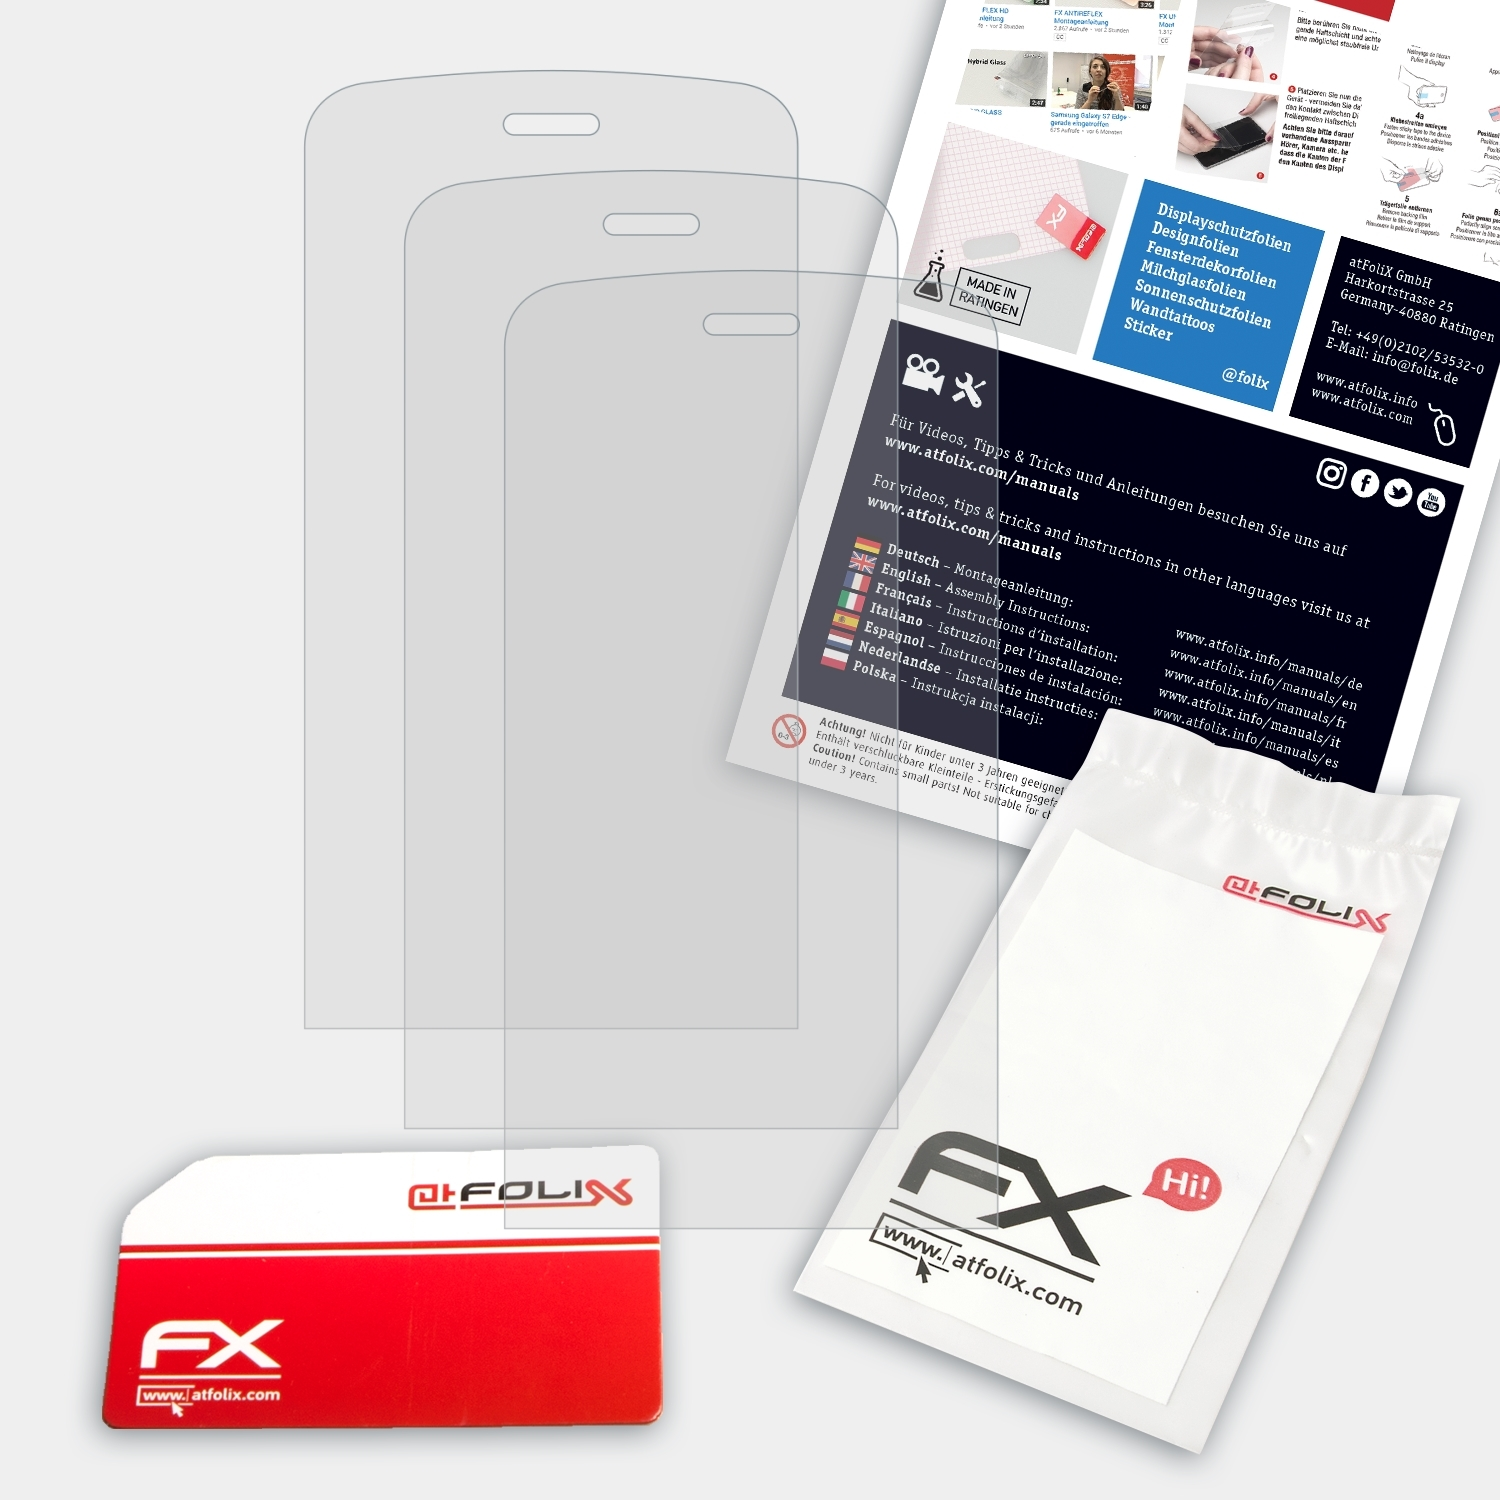 FX-Antireflex C5-03) ATFOLIX Displayschutz(für Nokia 3x